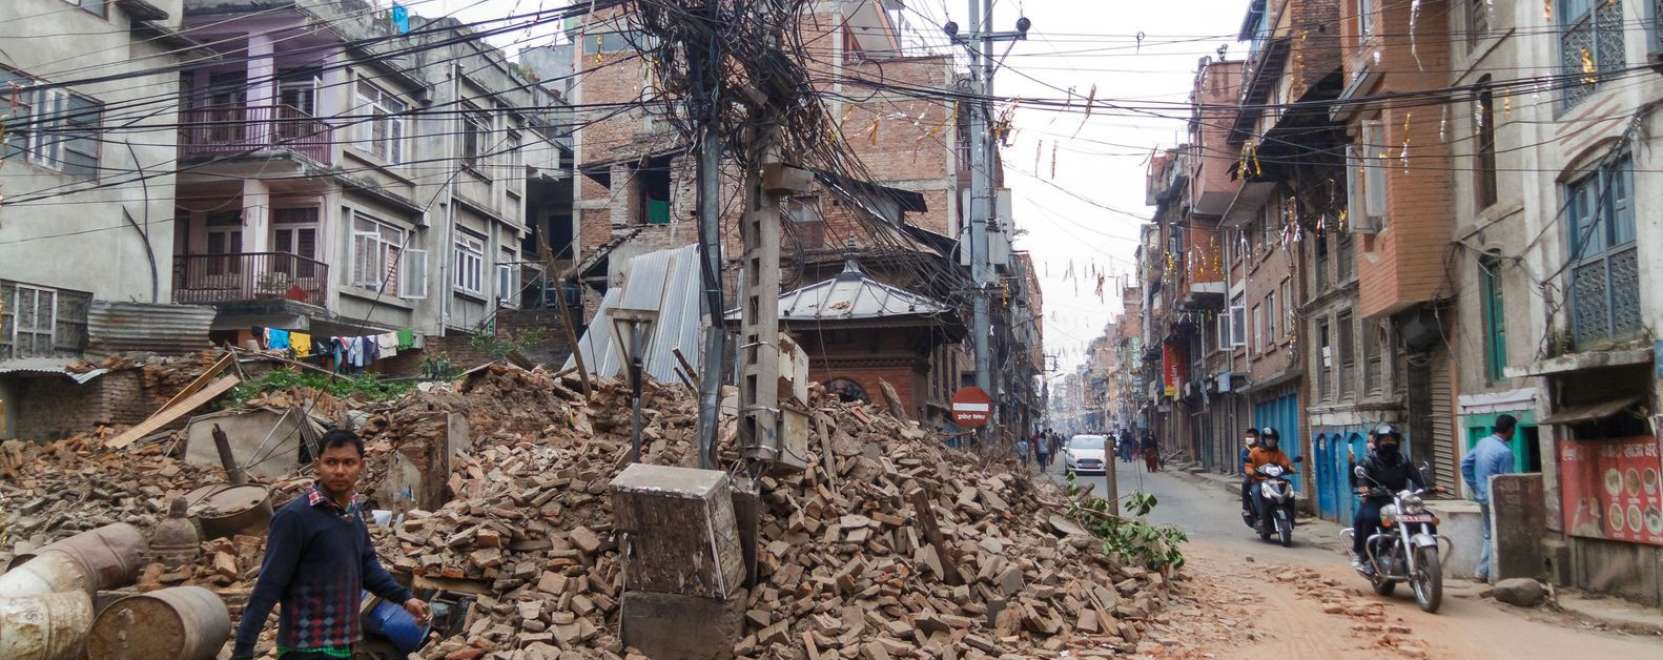 A nepáli földrengésnél is segít a Big Data